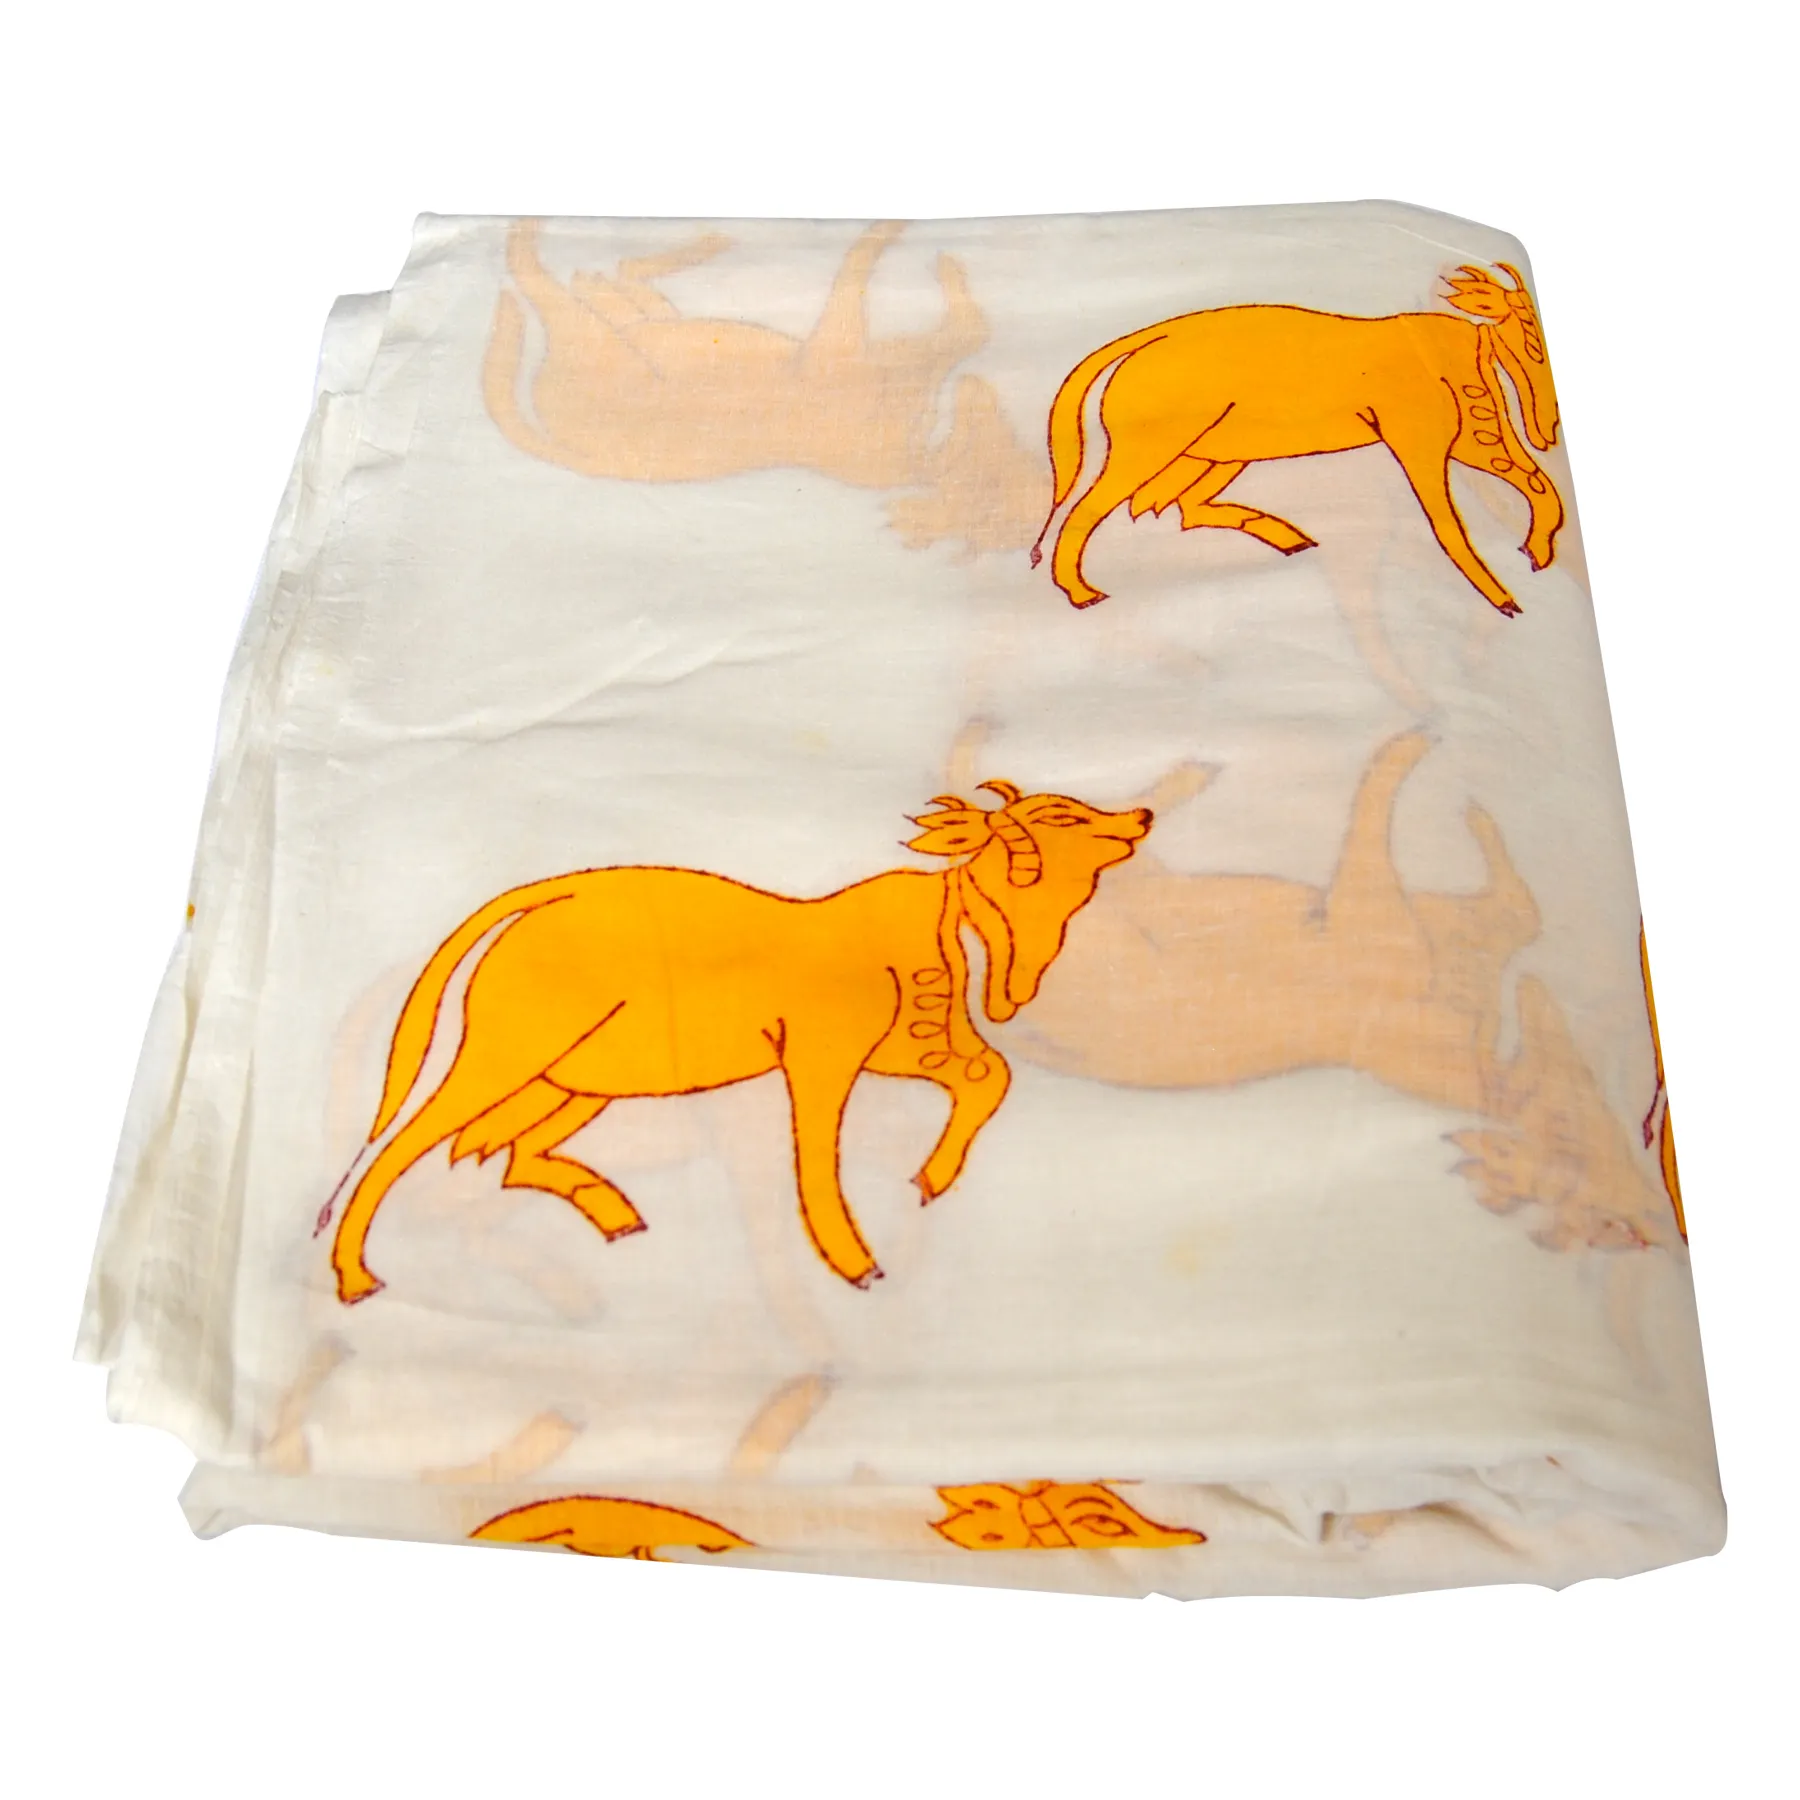 Высококачественная индийская хлопчатобумажная ткань с принтом в виде животных для изготовления изделий ручной работы белая вуаль для бега по двору оптом